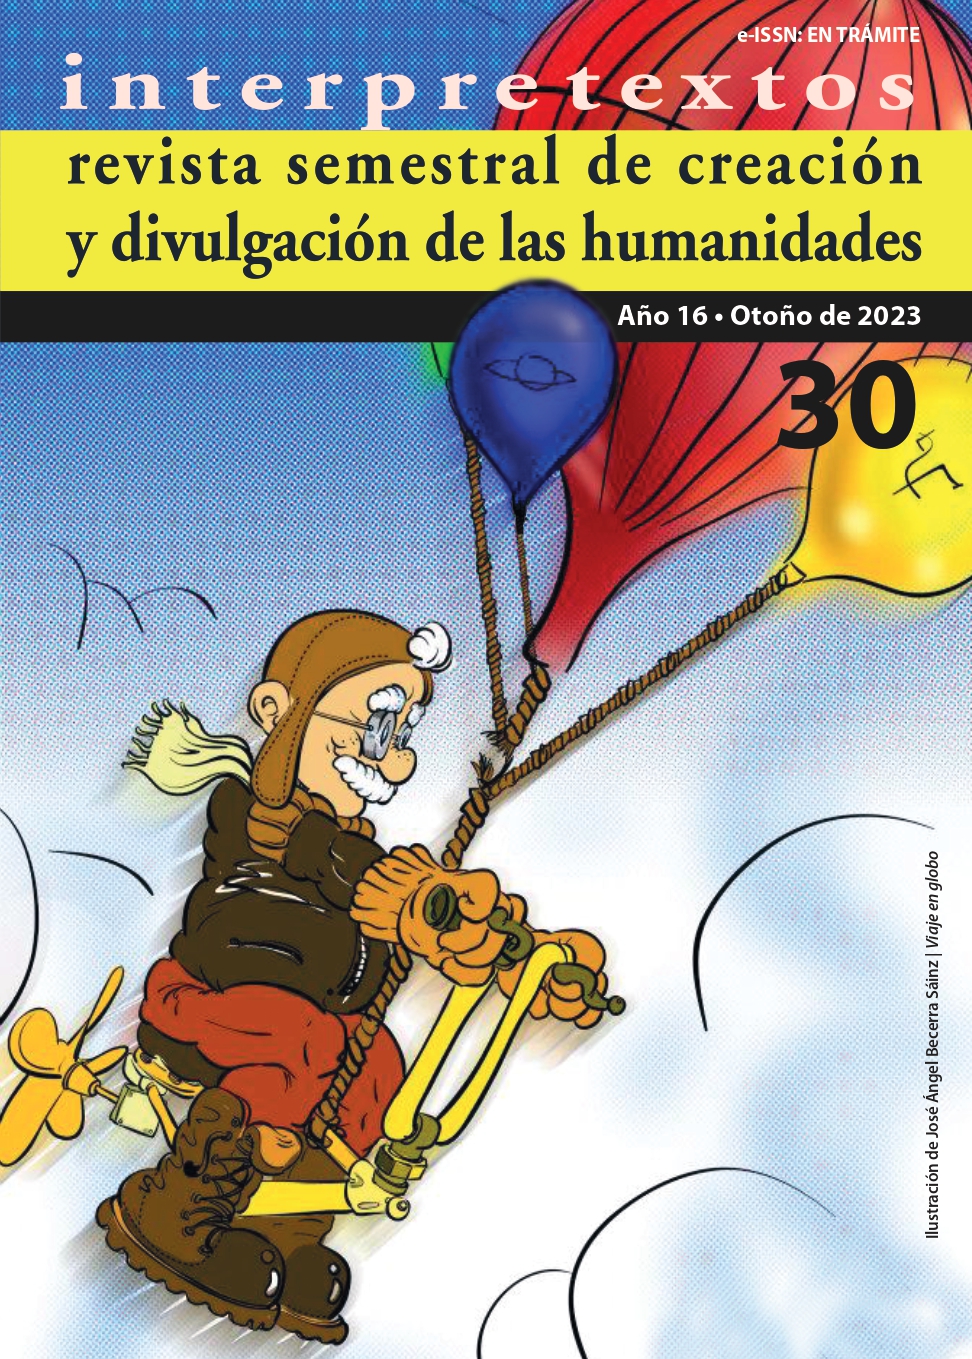 					Ver Vol. 1 Núm. 30 Año (16): Interpretextos, revista semestral de creación y divulgación de las humanidades
				